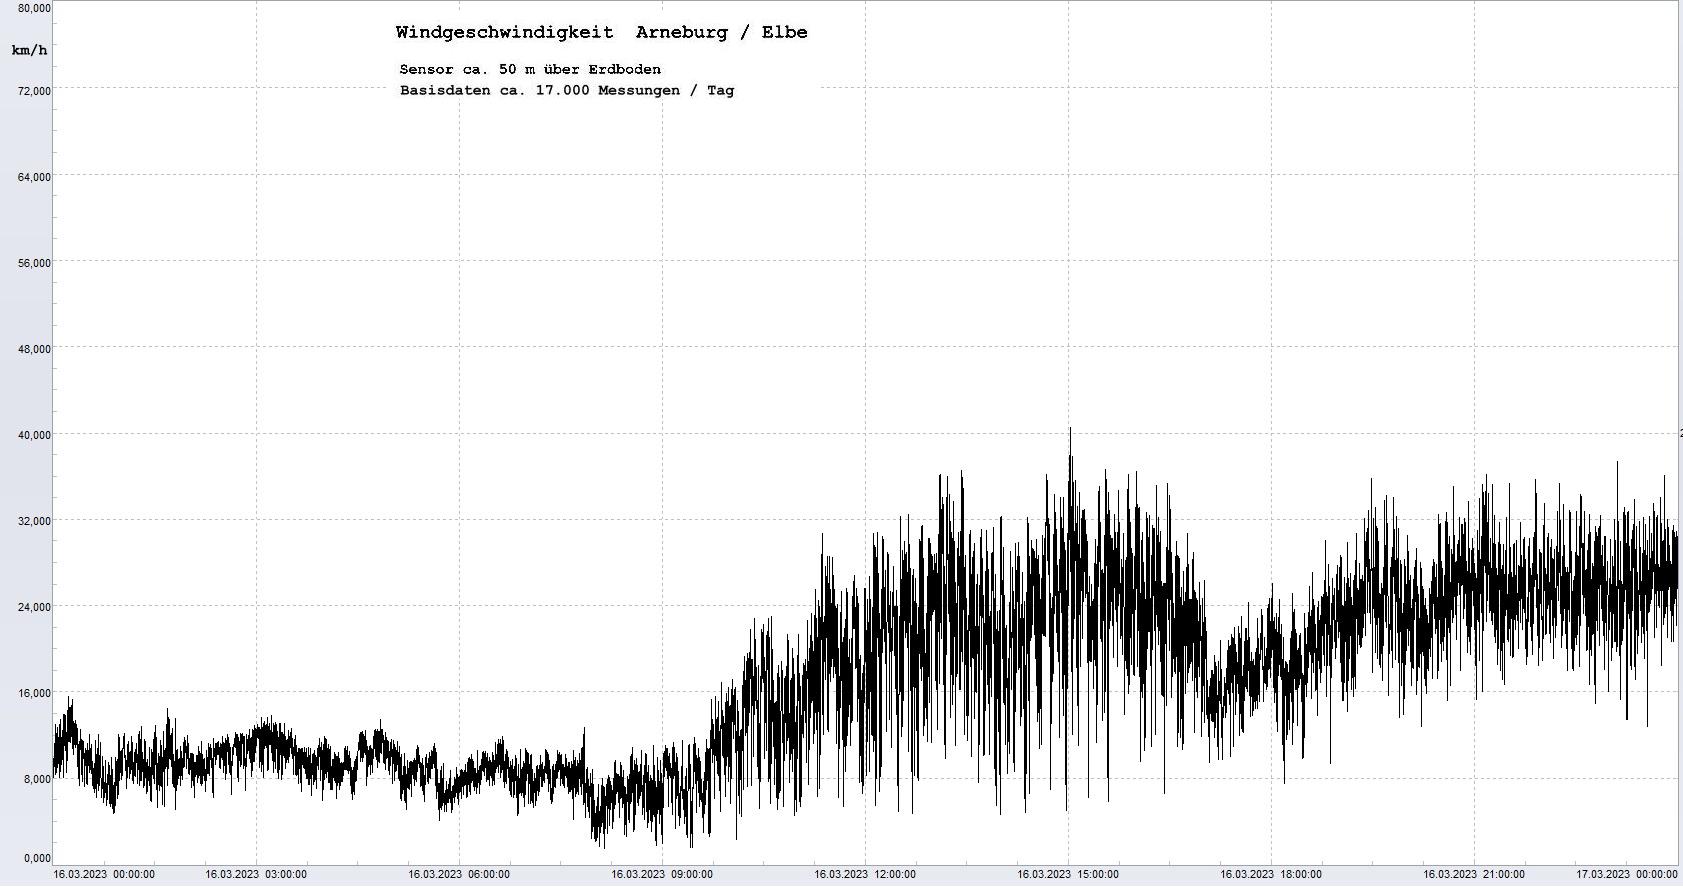 Arneburg Tages-Diagramm Winddaten, 16.03.2023
  Diaramm, Sensor auf Gebäude, ca. 50 m über Erdboden, Basis: 5s-Aufzeichnung